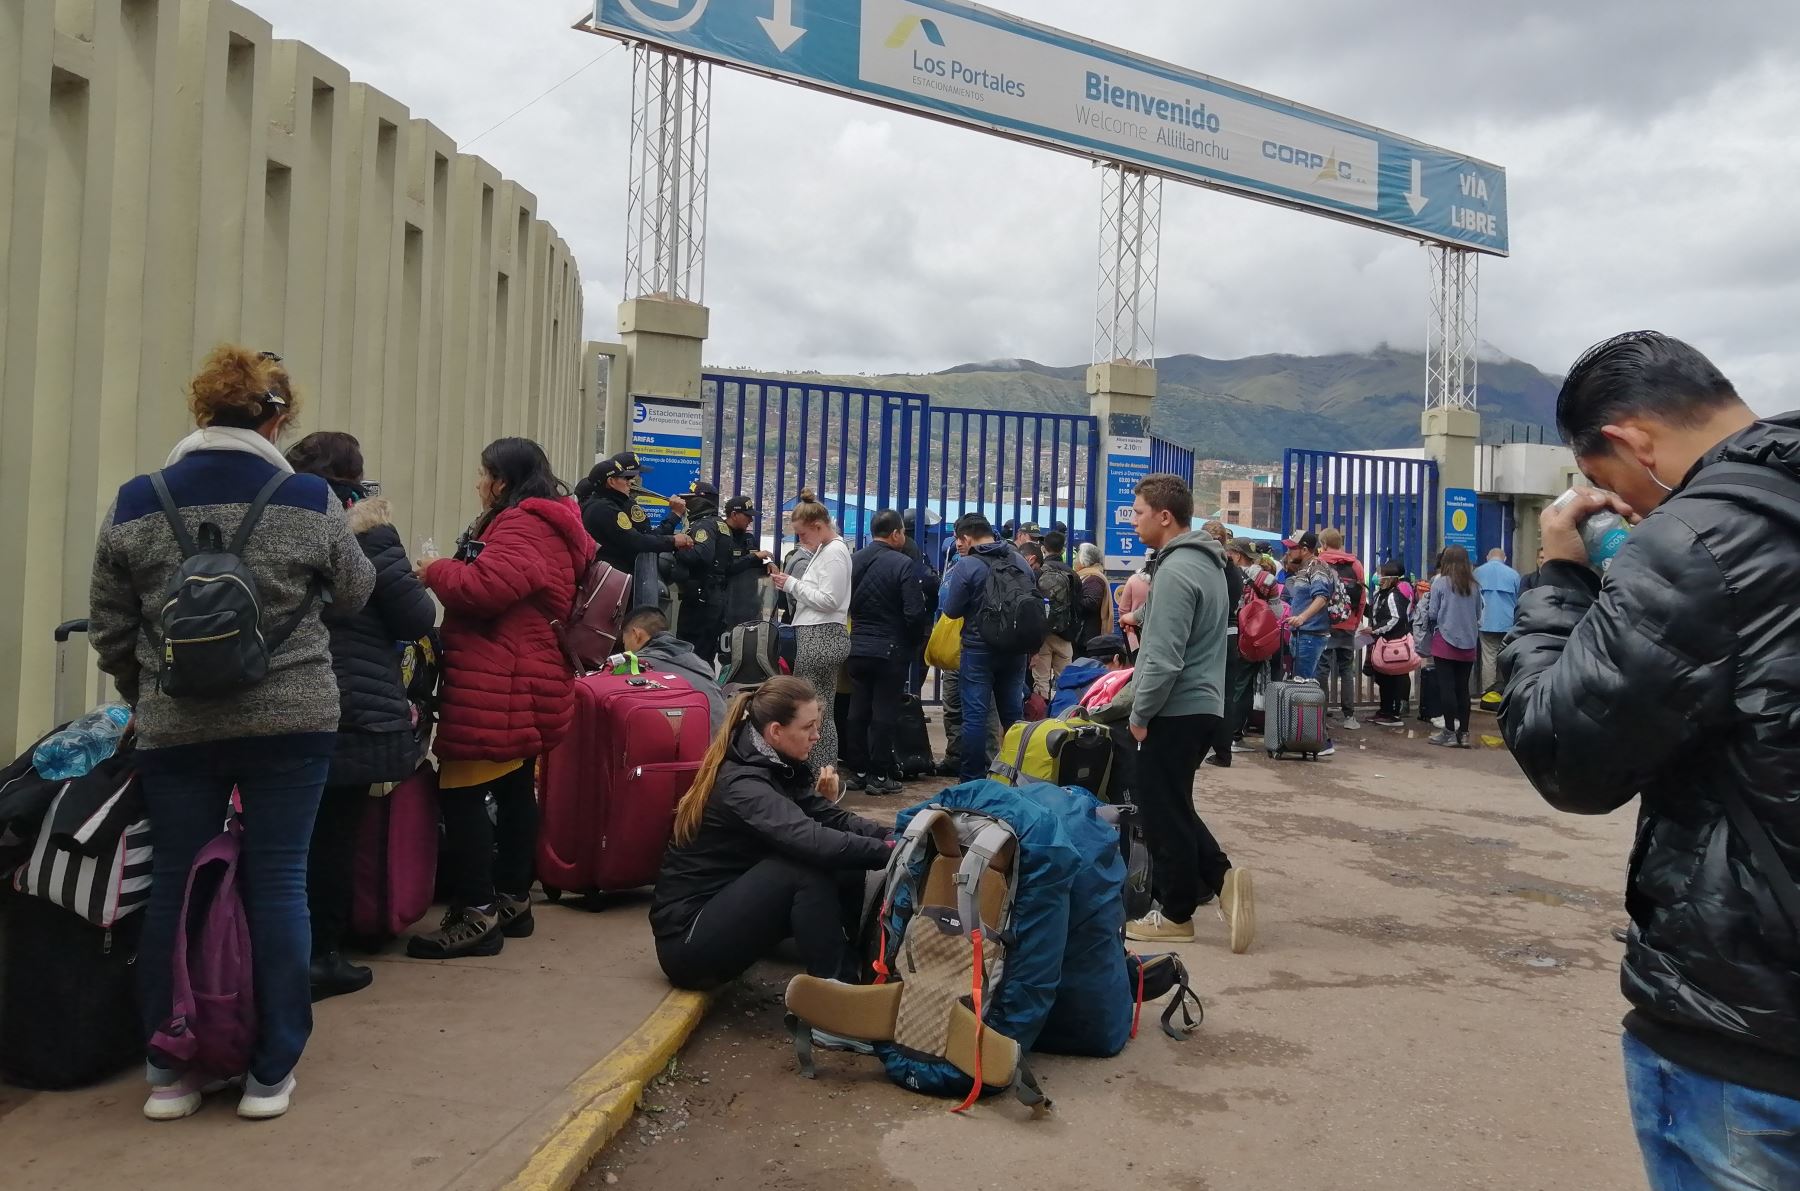 En las próximas horas serán trasladados a Lima los turistas extranjeros que se encuentran varados en Cusco debido a la declaratoria que ordena la suspensión de los vuelos para evitar la propagación del coronavirus. ANDINA/Percy Hurtado